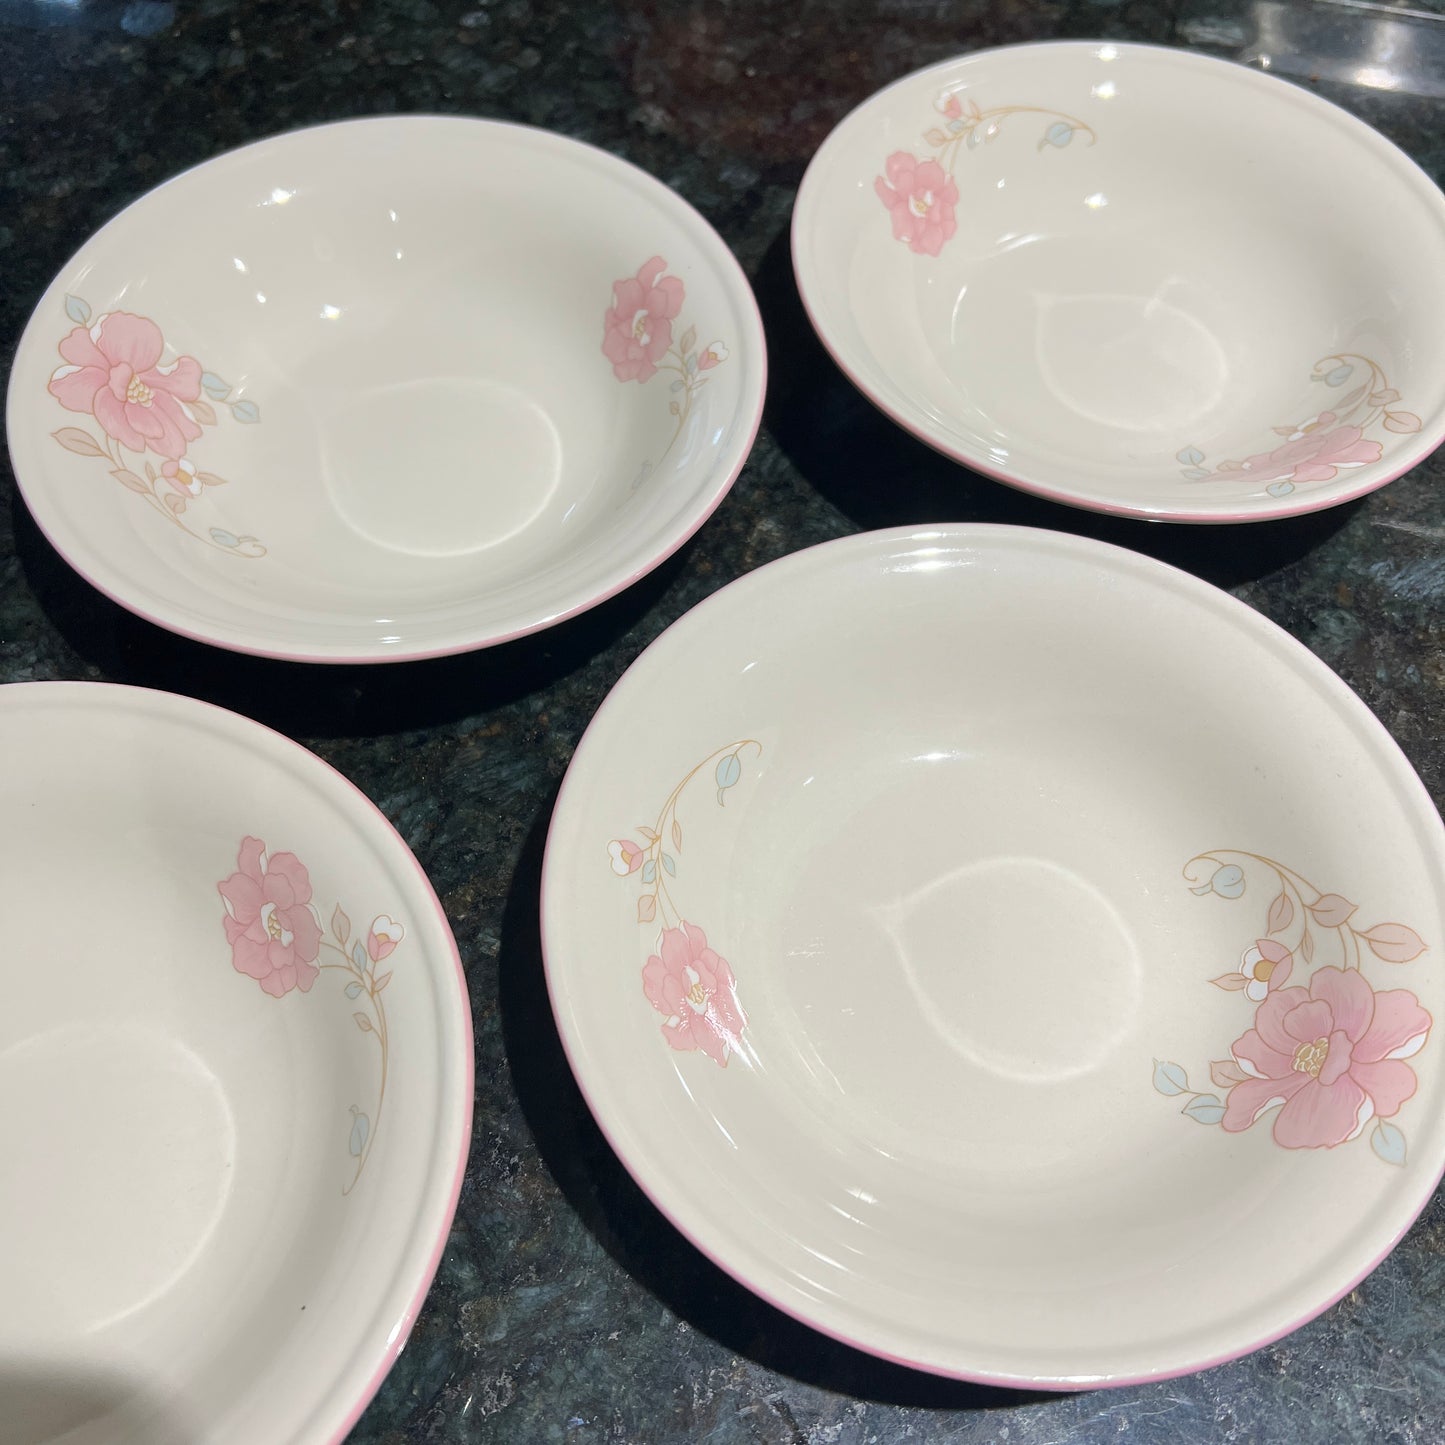 Vintage 1988 China Pearl Bowls + Mugs